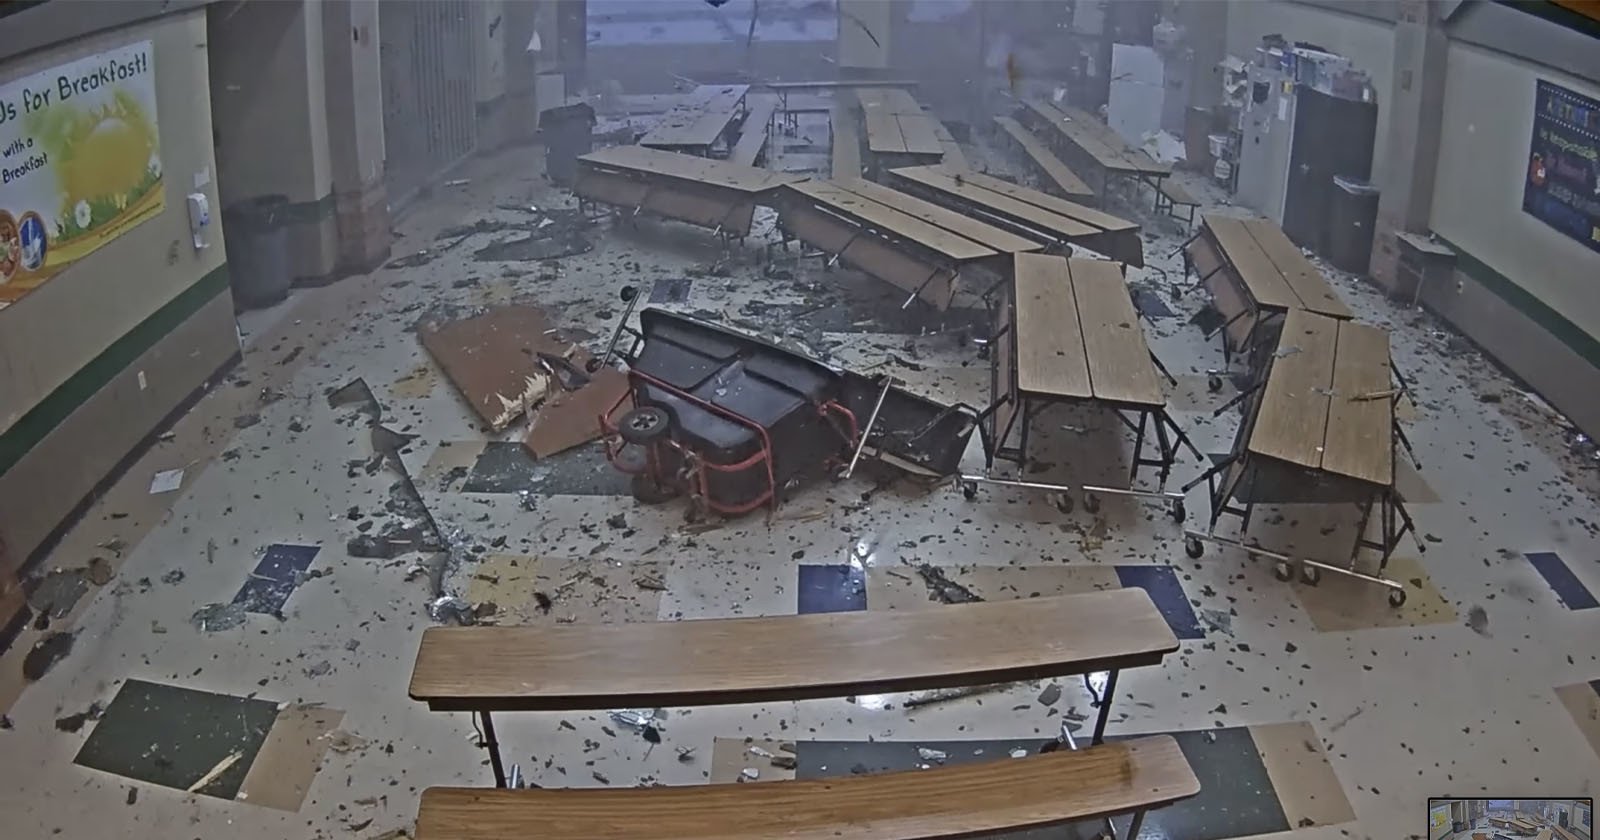  fury tornado captured school security cameras 